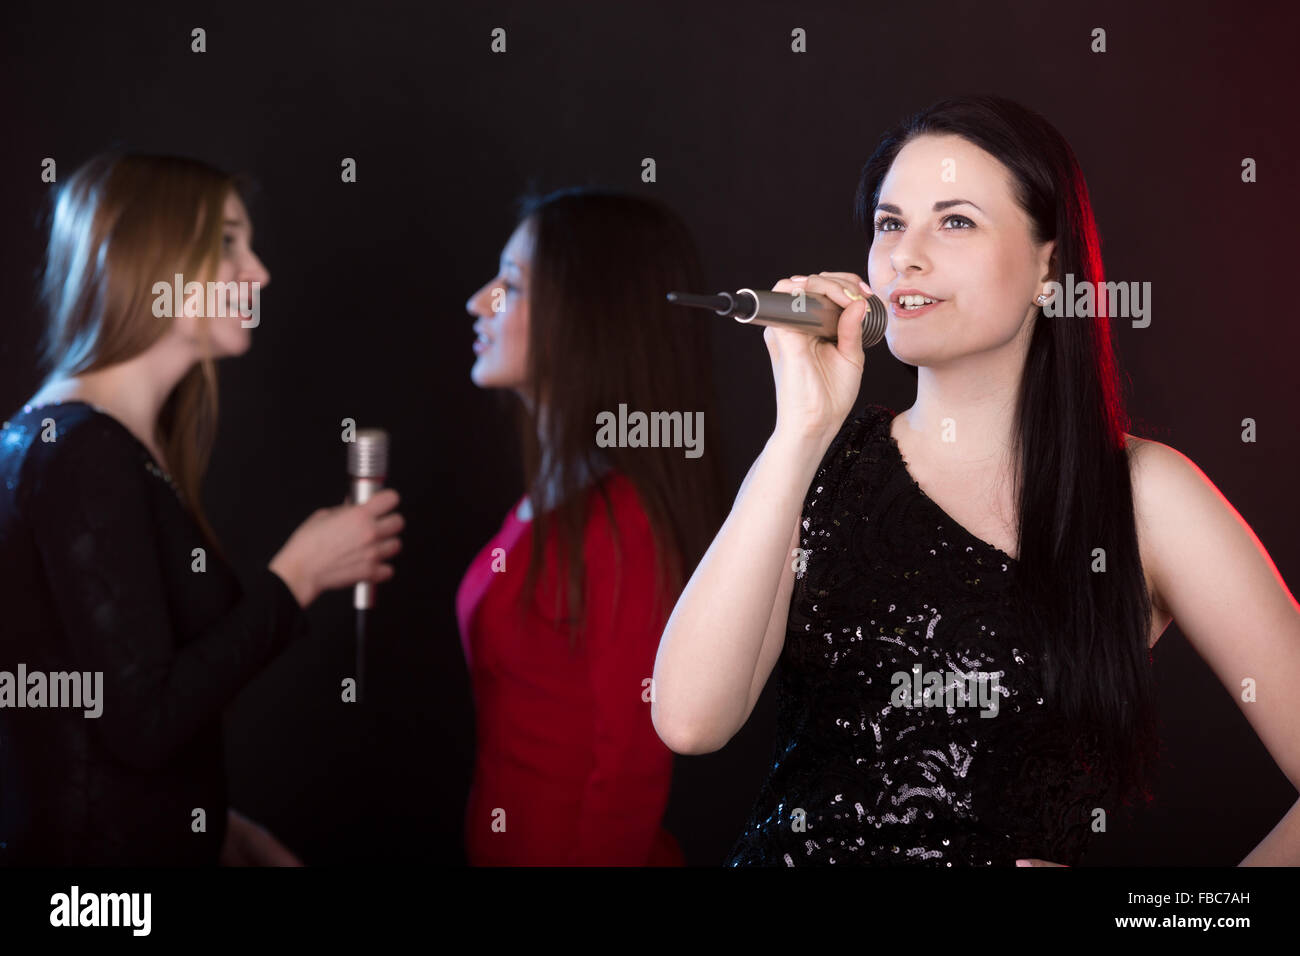 Ritratto di ragazza bella cantante con microfono cantando lyric love song, indietro cantanti sullo sfondo Foto Stock